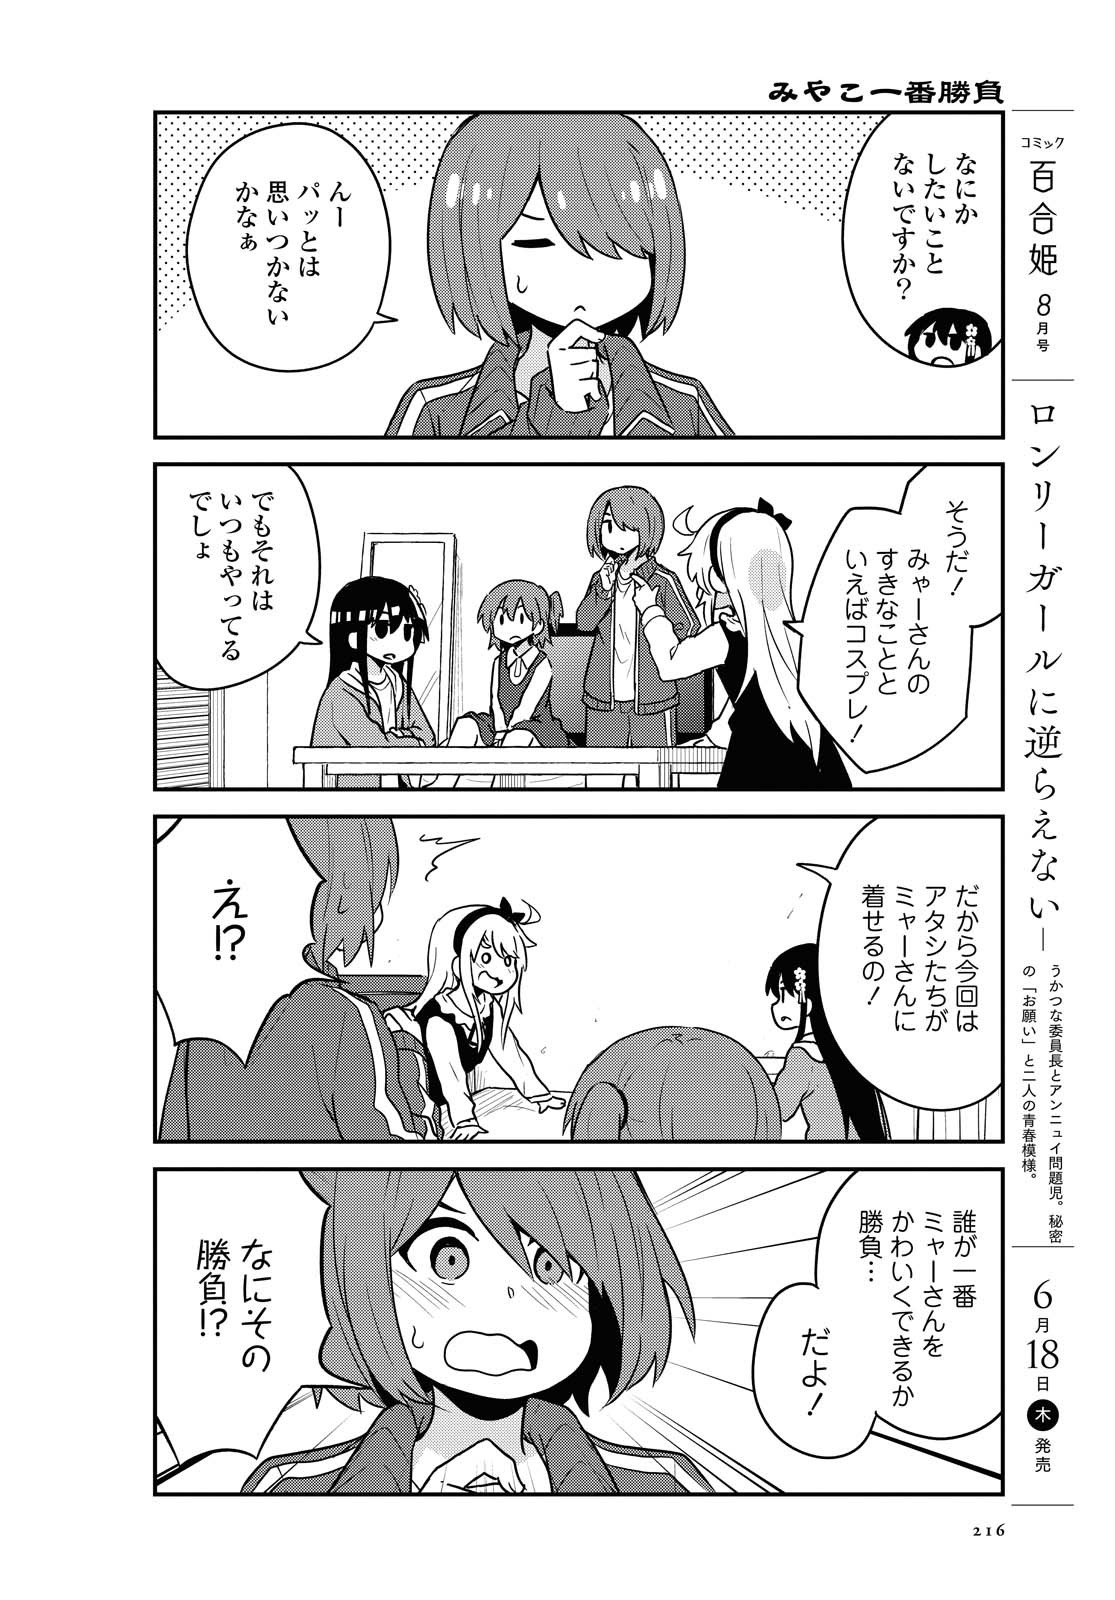 Watashi ni Tenshi ga Maiorita! - Chapter 67 - Page 4